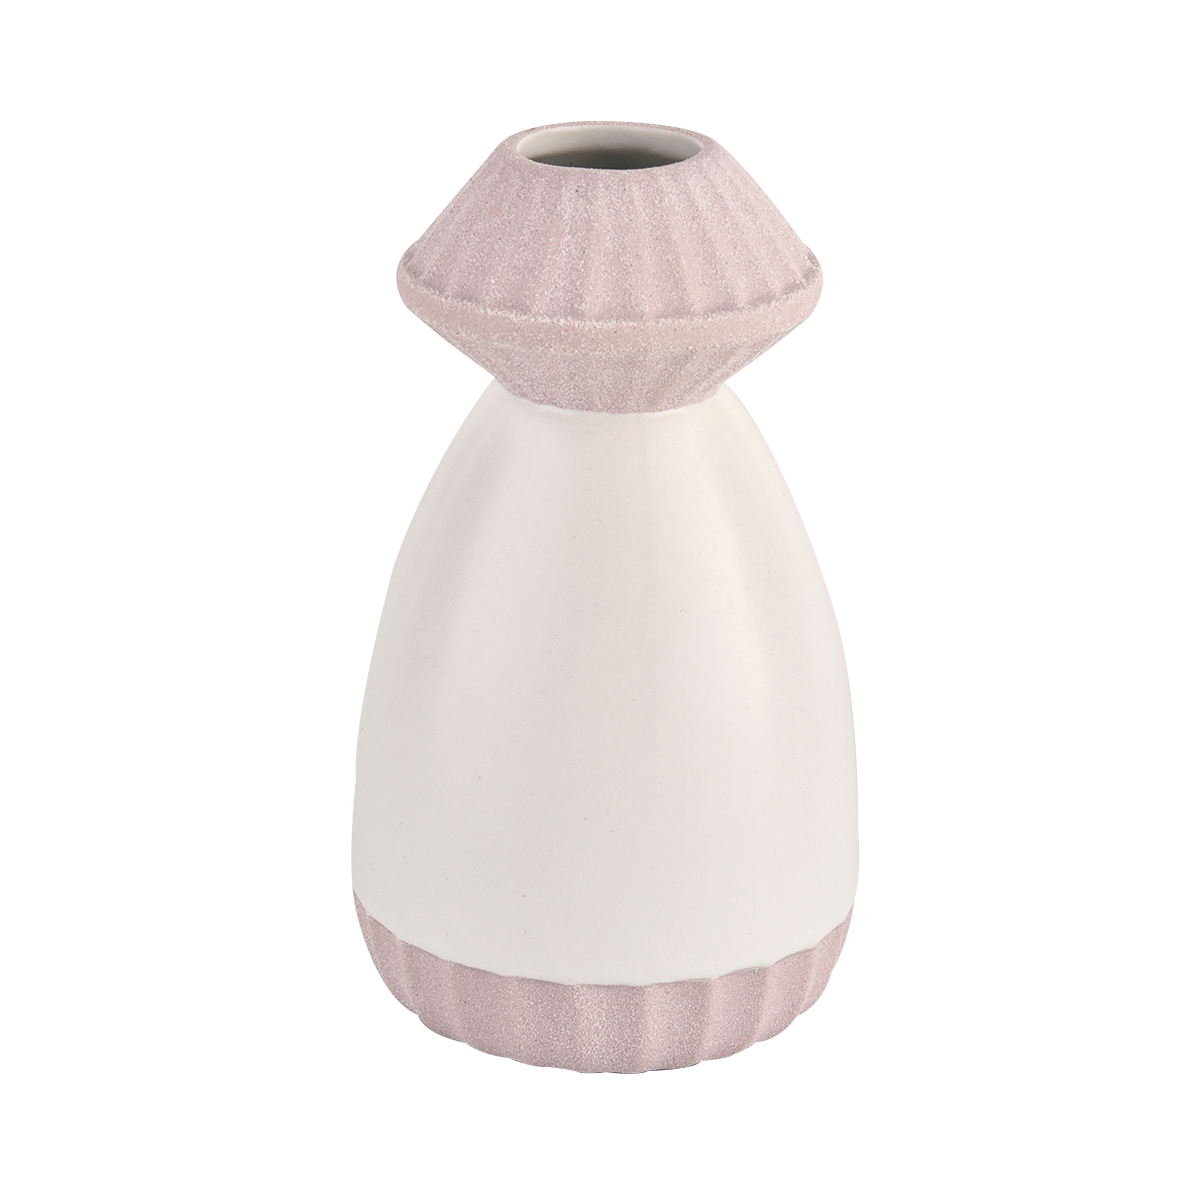 Leere dekorative Keramikdiffusorflaschen für Wohnkulturduftflasche